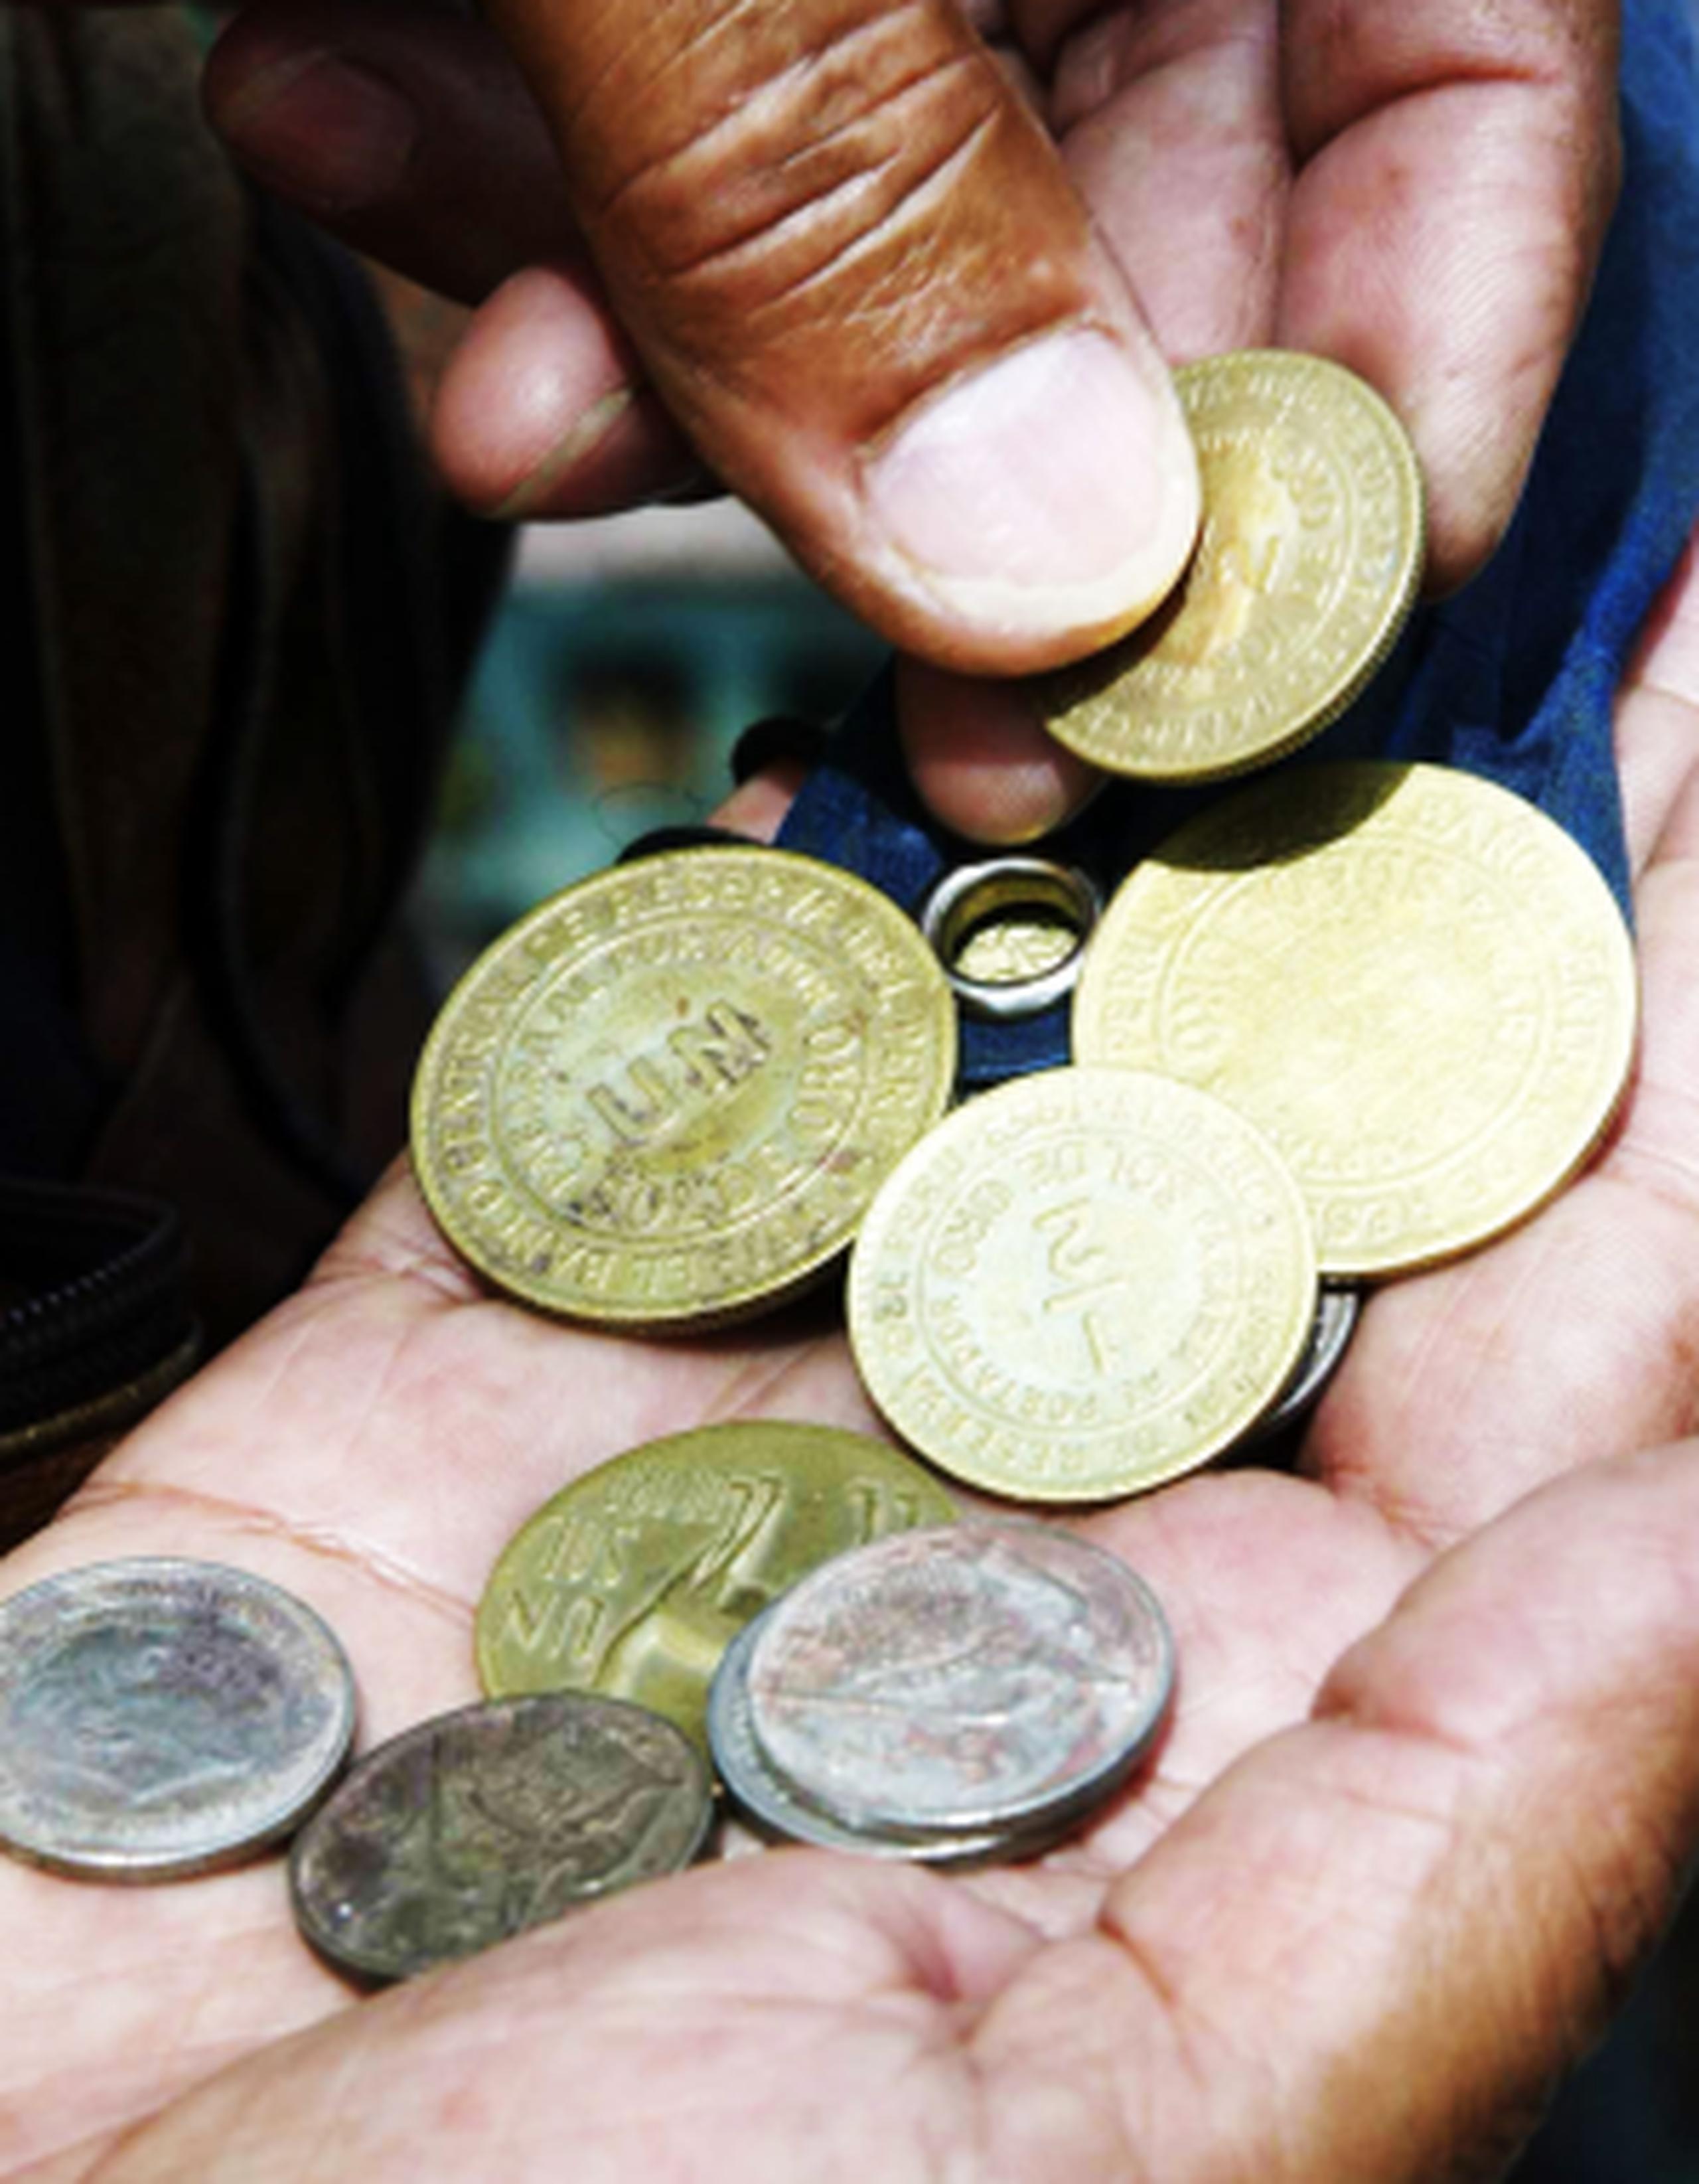 El ladrón robó unos 100,000 euros ($135,000) en monedas de oro. (Archivo)